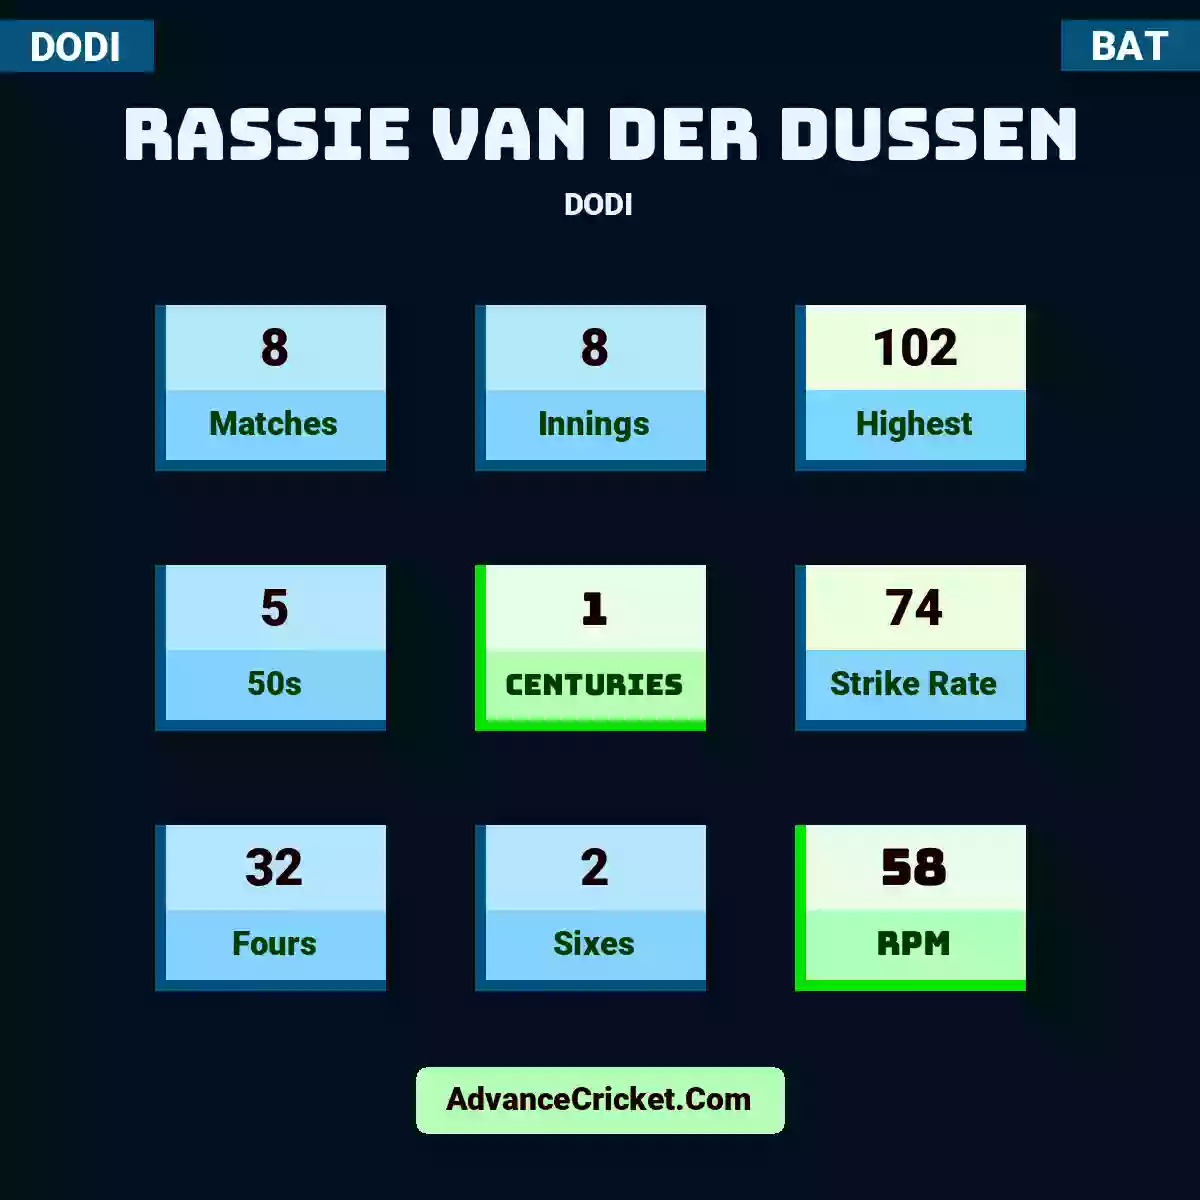 Rassie van der Dussen DODI , Rassie van der Dussen played 8 matches, scored 102 runs as highest, 5 half-centuries, and 1 centuries, with a strike rate of 74. R.Dussen hit 32 fours and 2 sixes, with an RPM of 58.